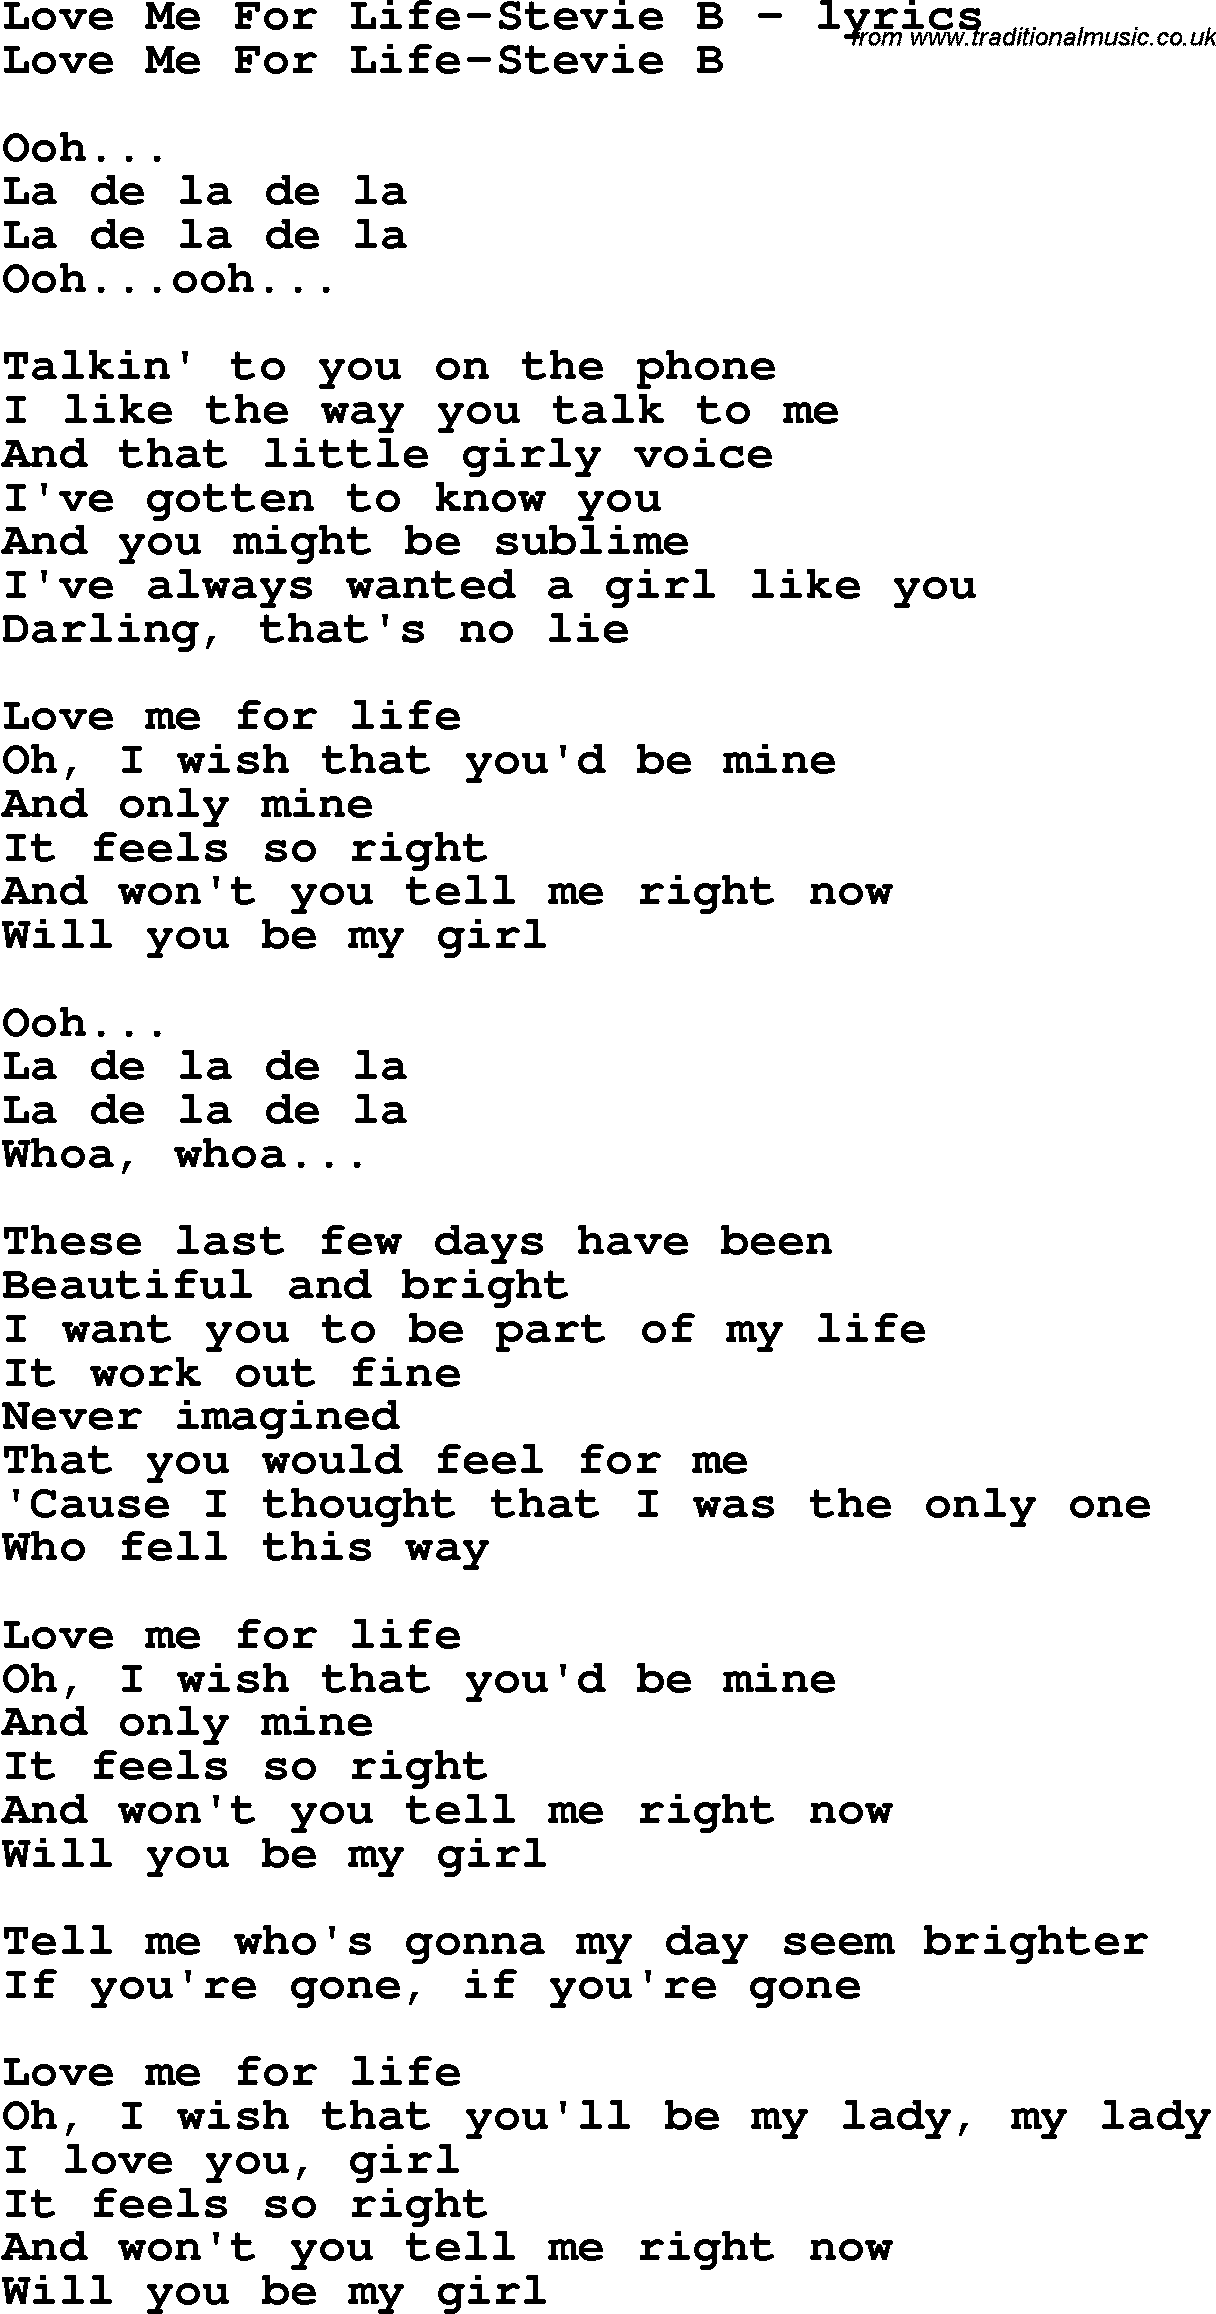 Love Song Lyrics for: Love Me For Life-Stevie B